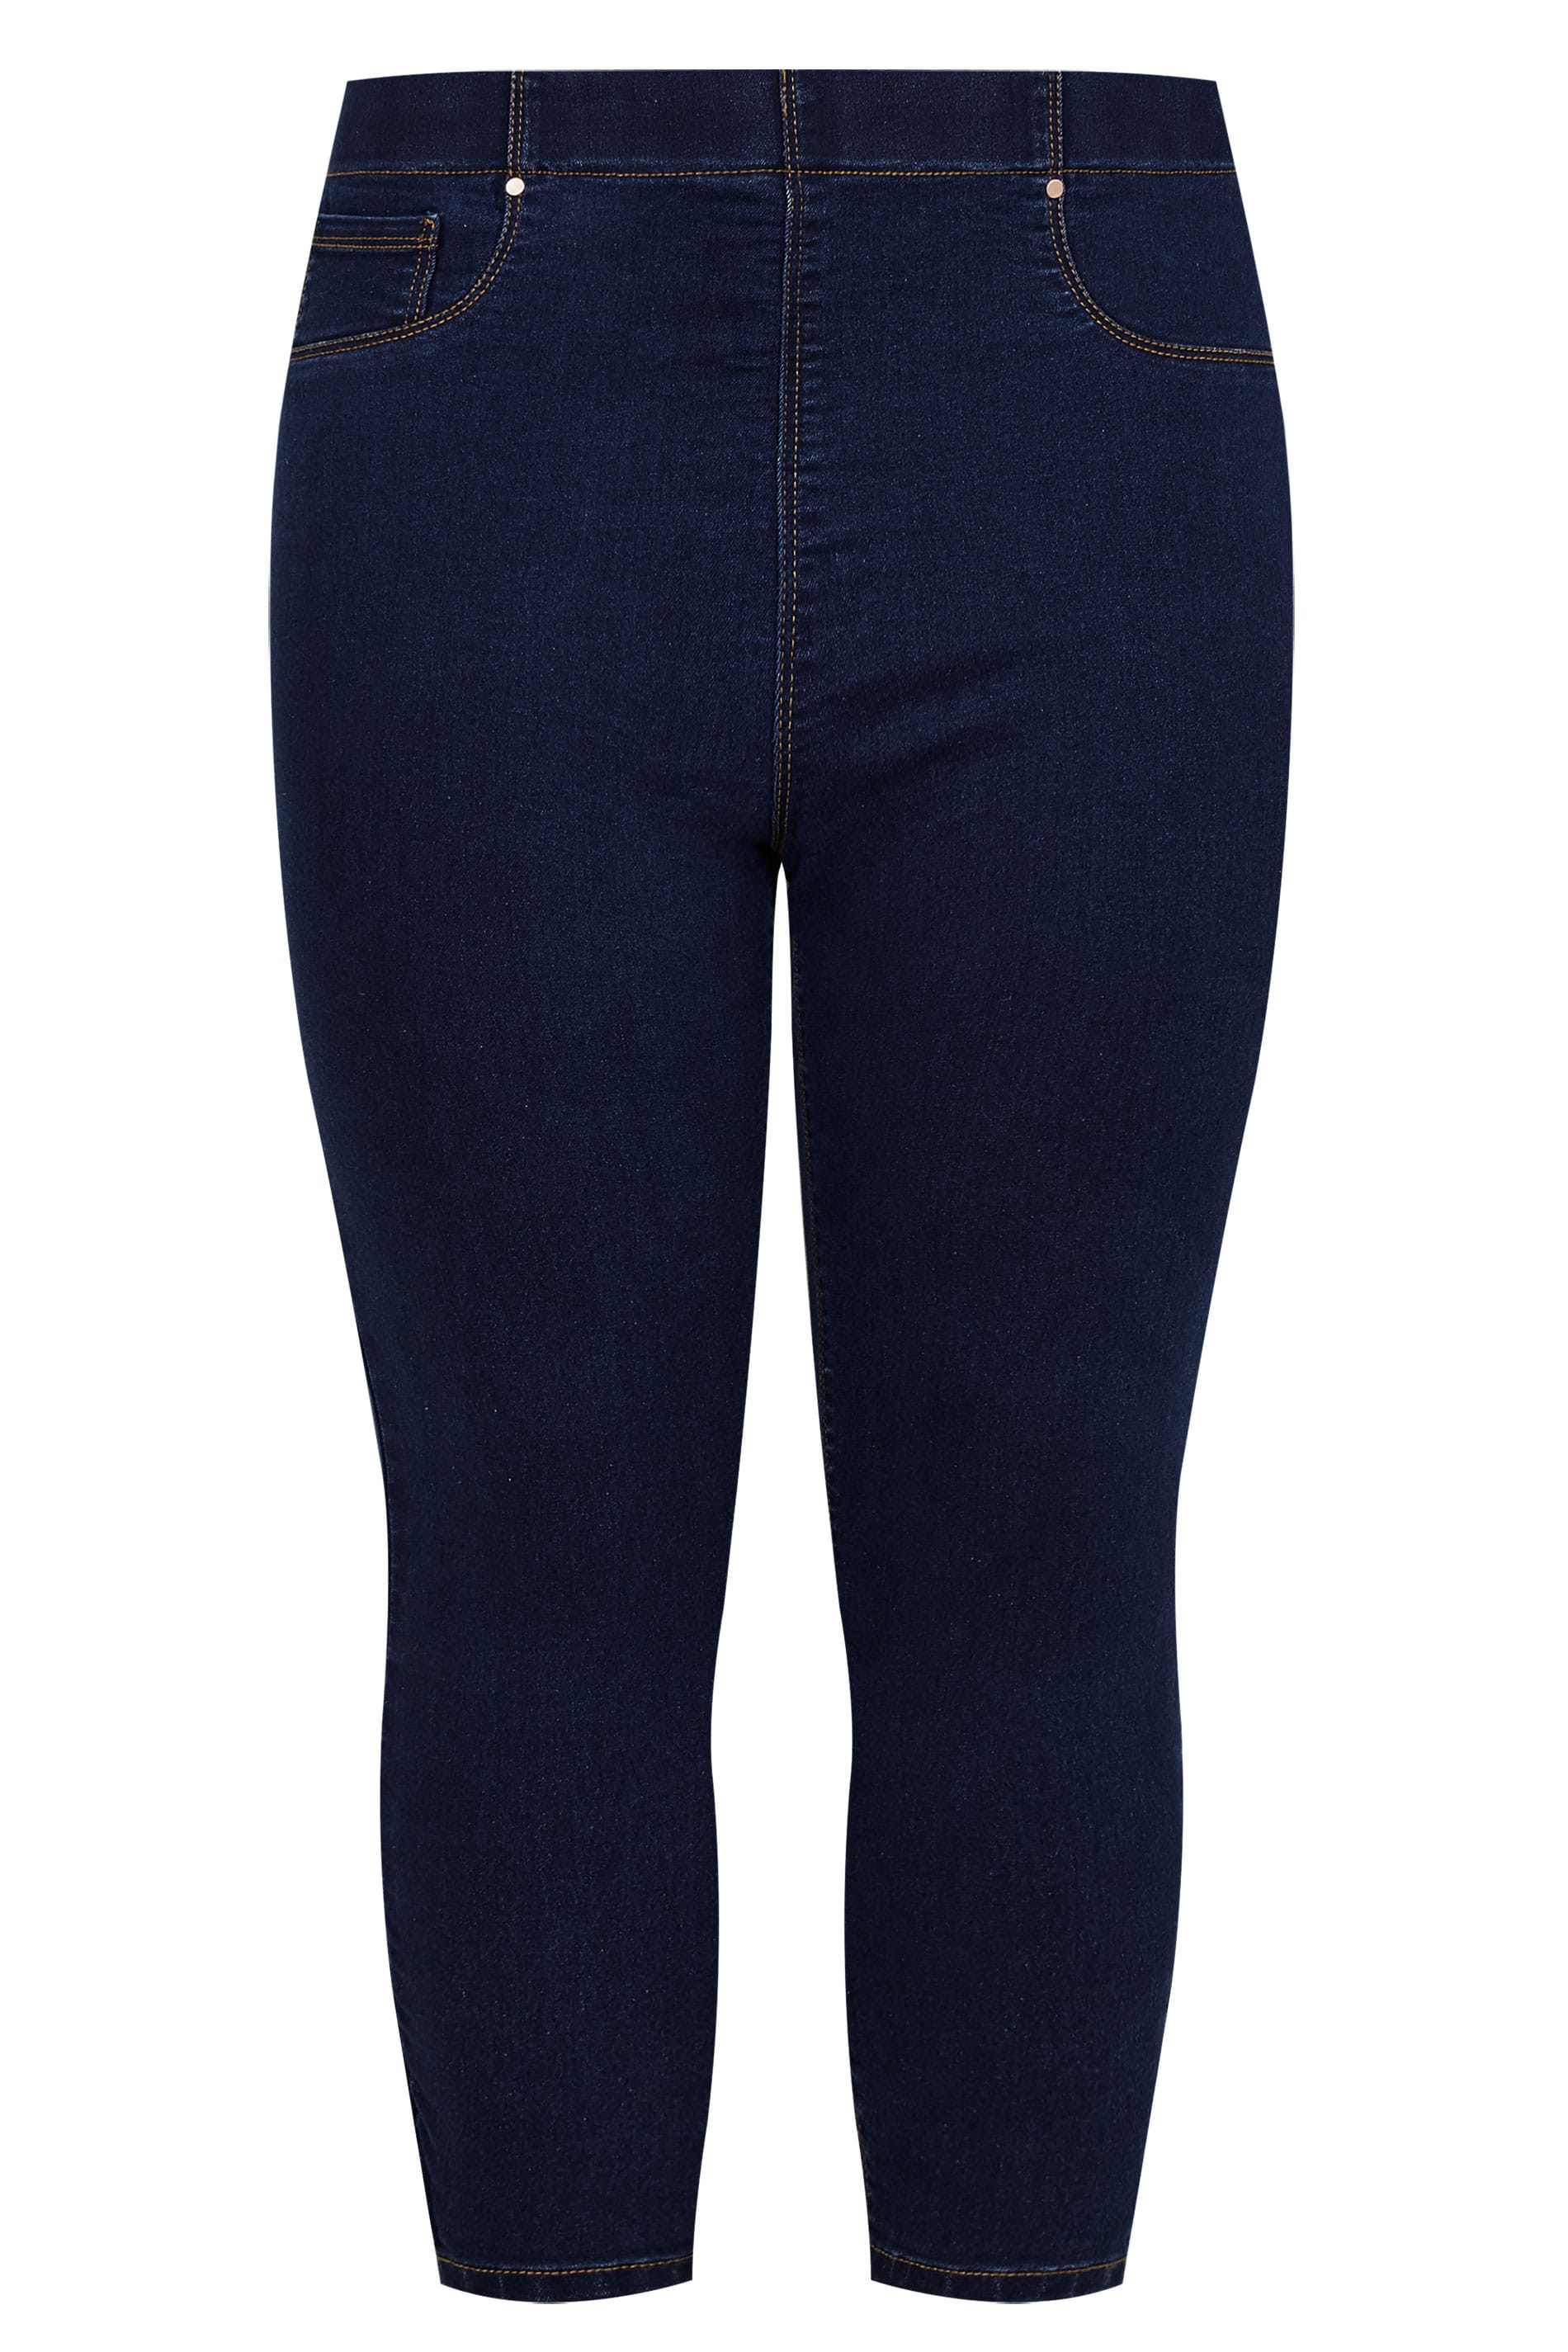 Plus Size Indigo Blue Cropped JENNY Jeggings | Sizes 16 to 36 | Yours Clothing 3